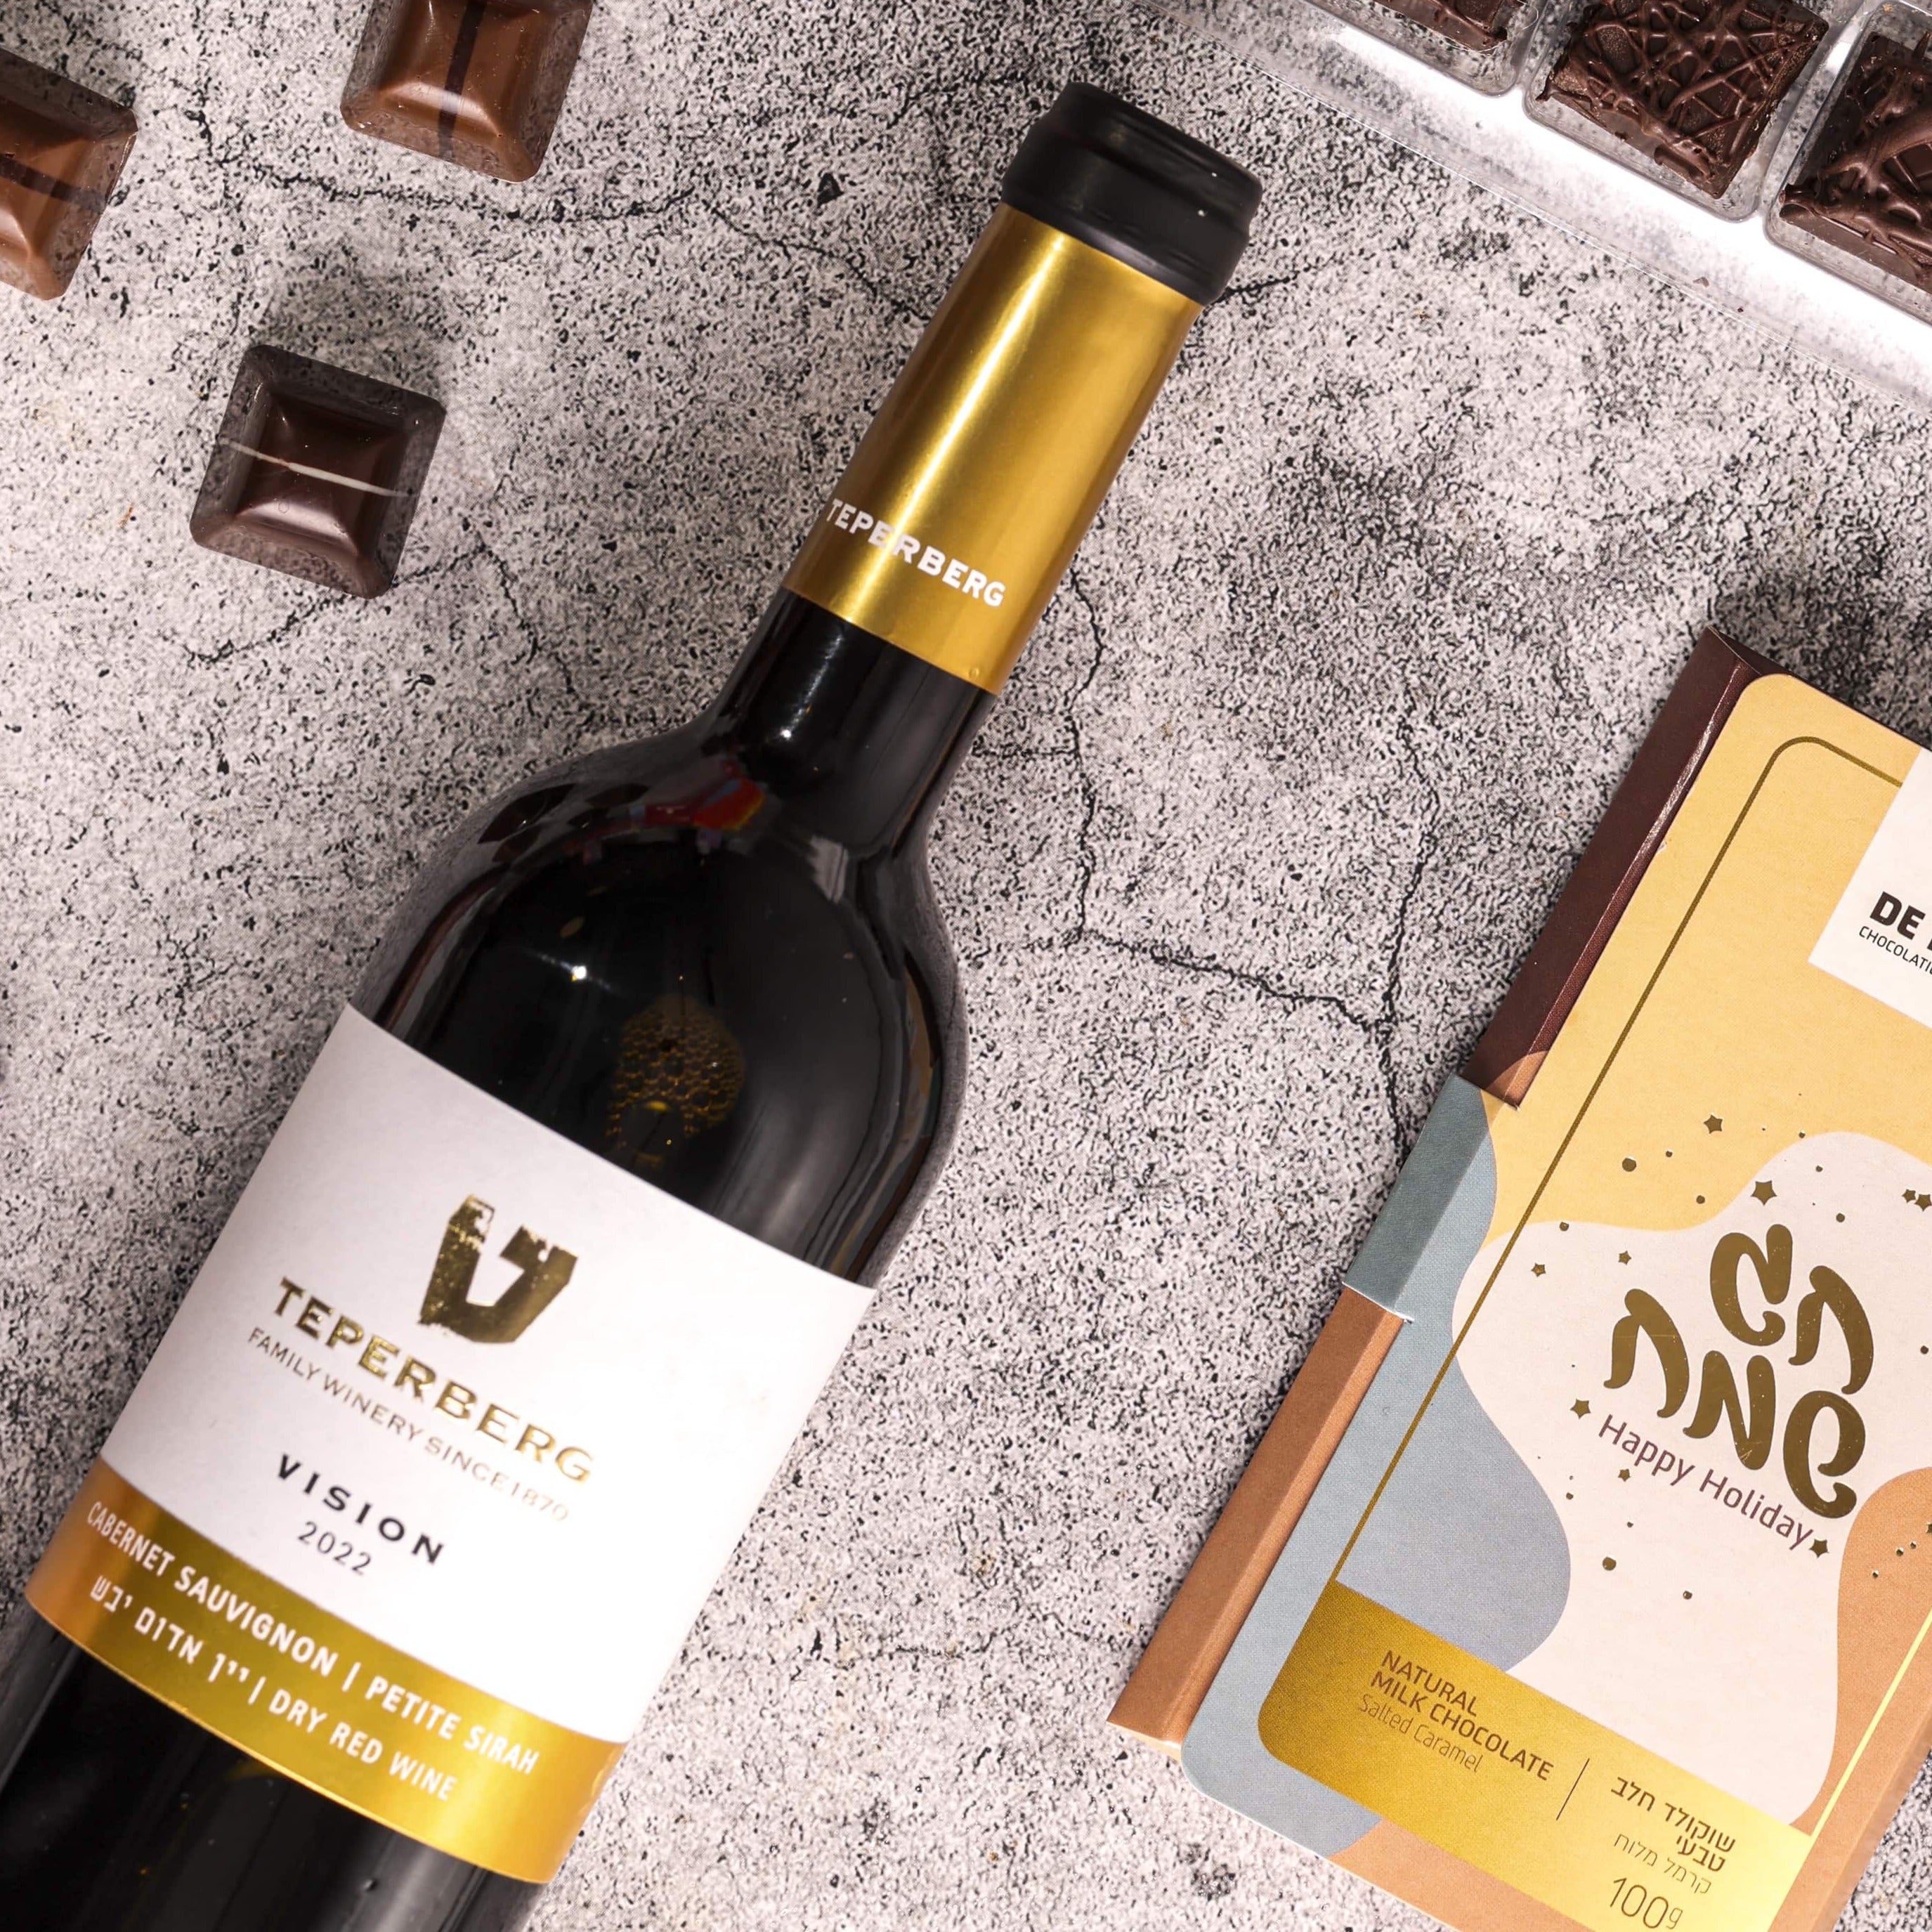 מארז שי Fine & Wine- שוקולד ויין כשל"פ ללא חשש קטניות